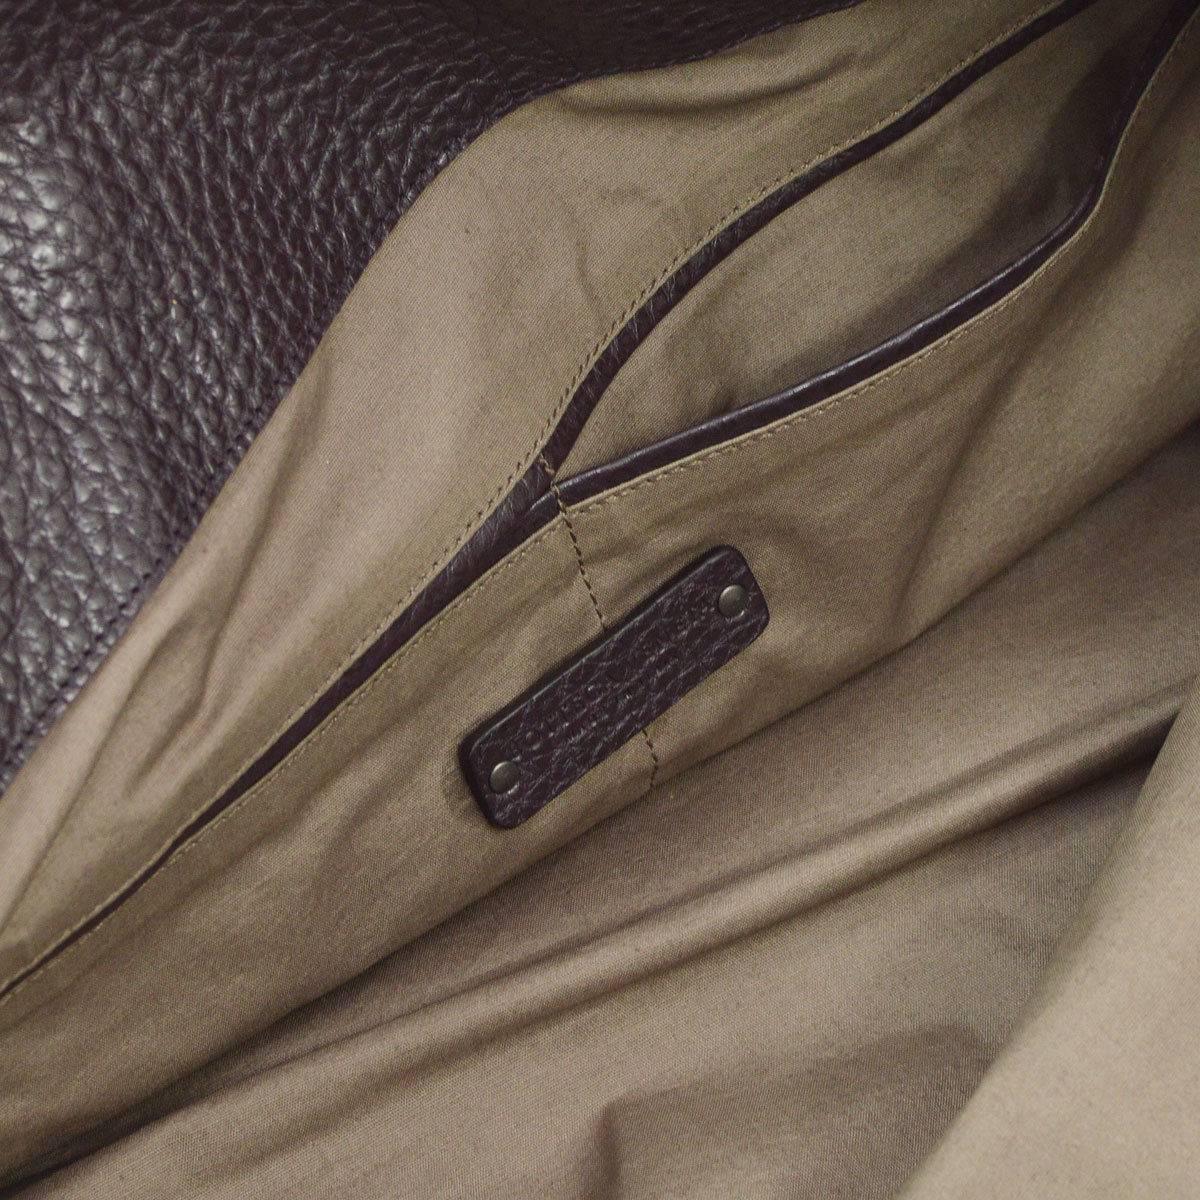 Bottega Veneta Leather Men's Women's Overnight Weekender Carryall Travel Bag 2